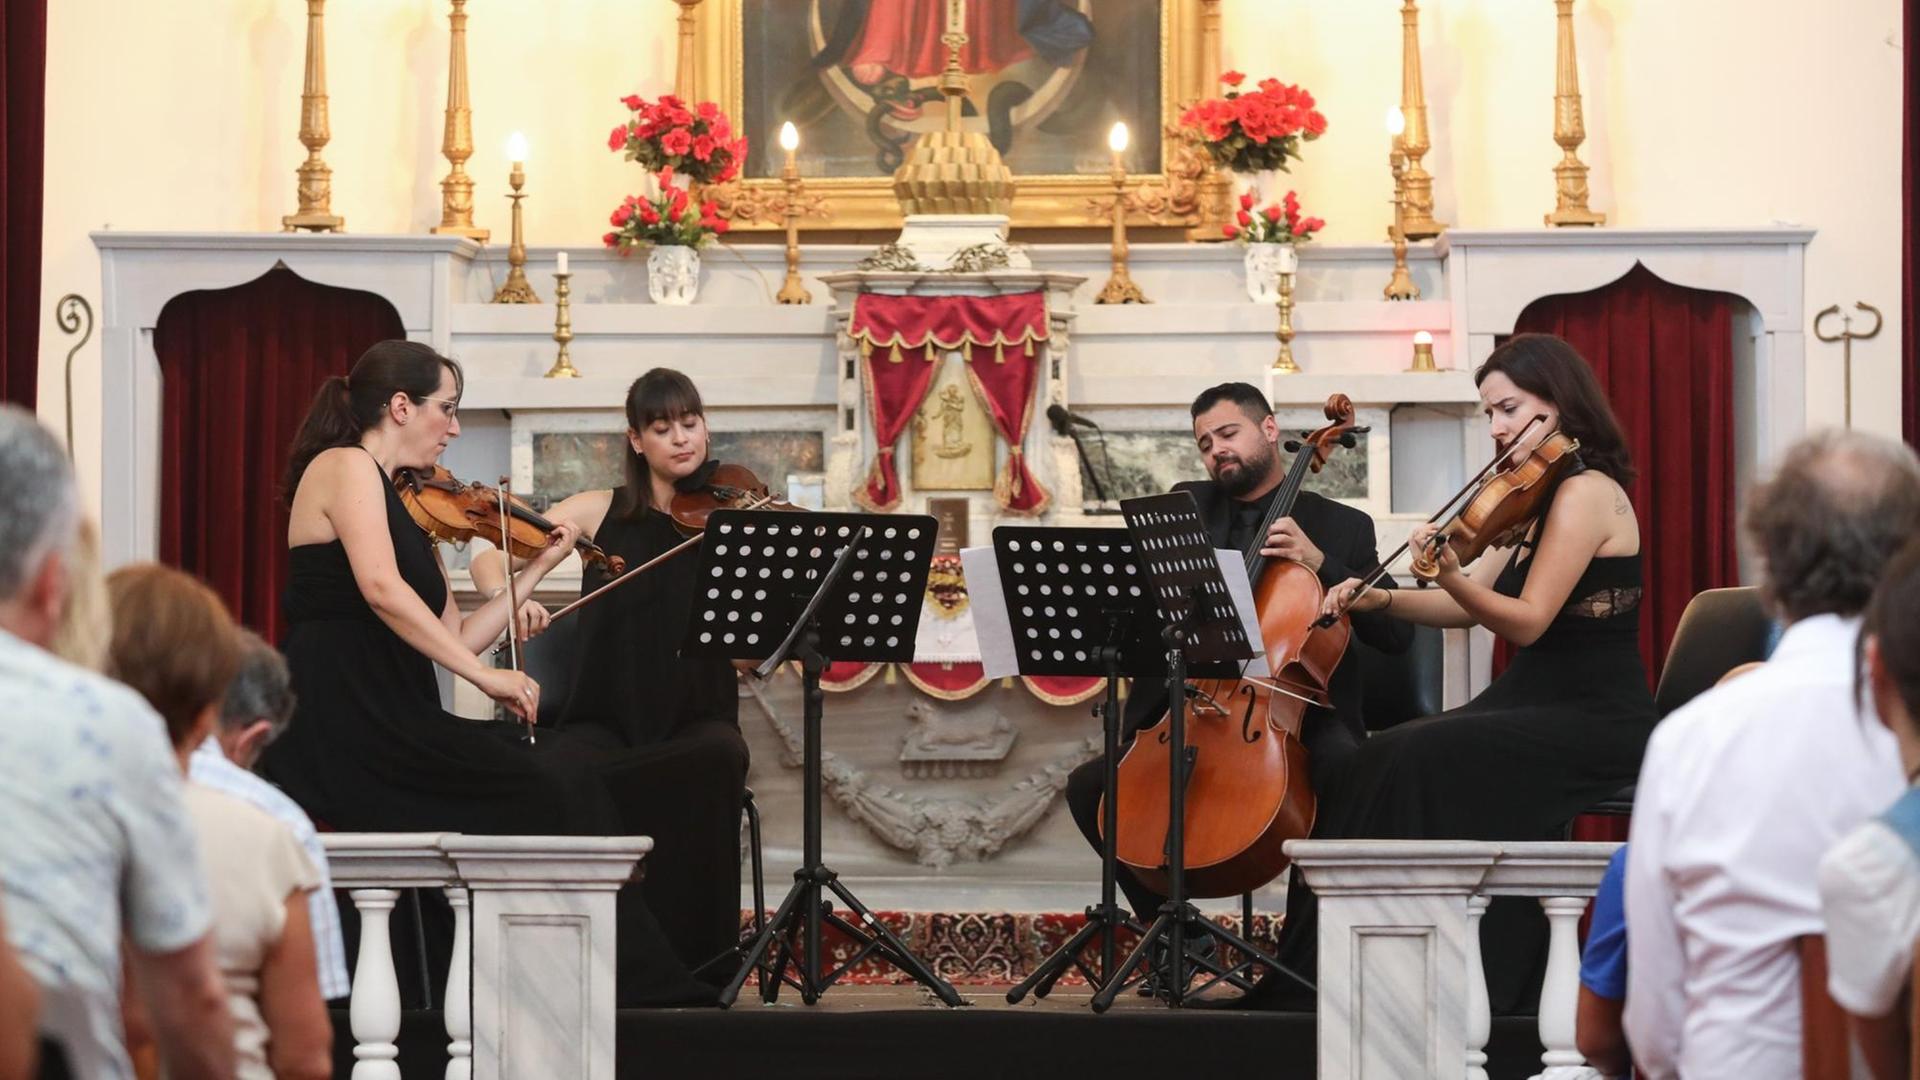 Drei Frauen mit Violinen und ein Mann mit Cello sitzen im Halbkreis um ihre Notenständer und spielen im Altarraum einer Kirche klassische Musik